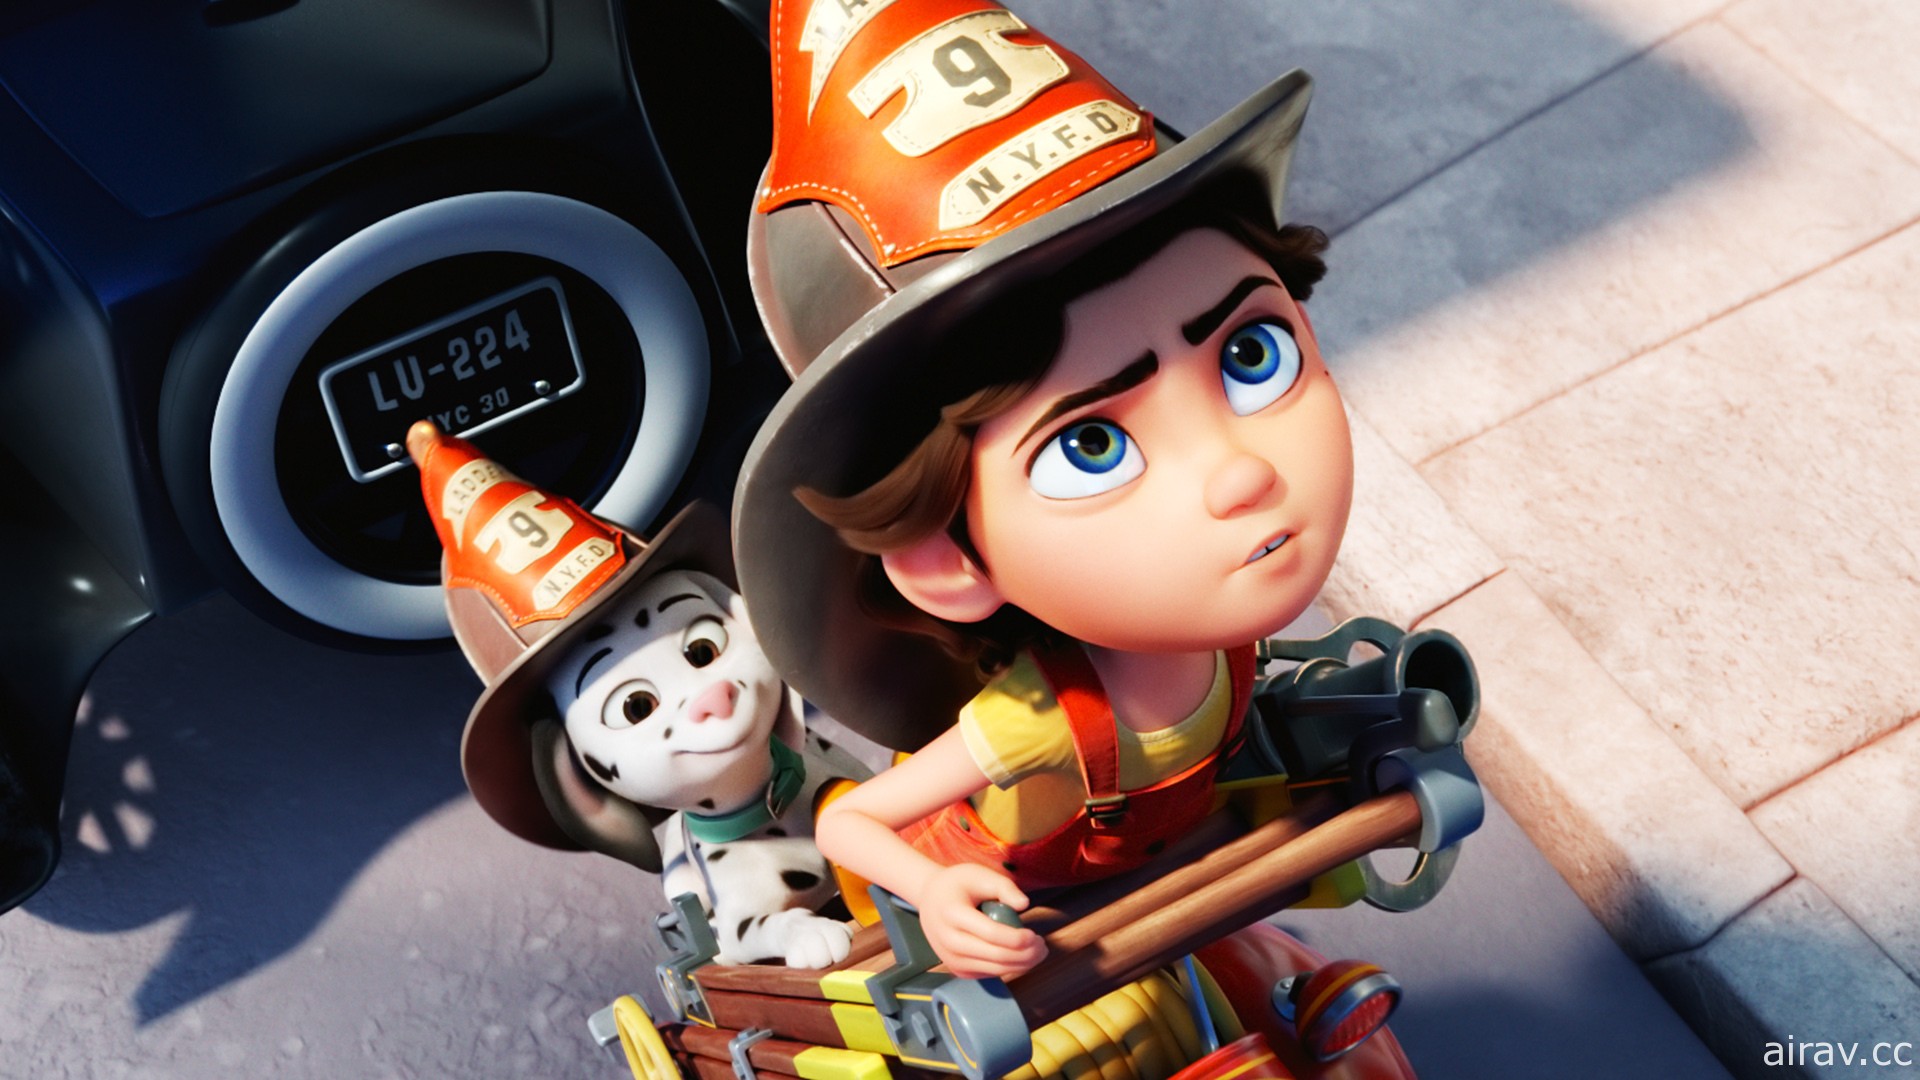 夢想成為消防員《烈火少女》動畫電影 7/29 中英版本同步在台上映